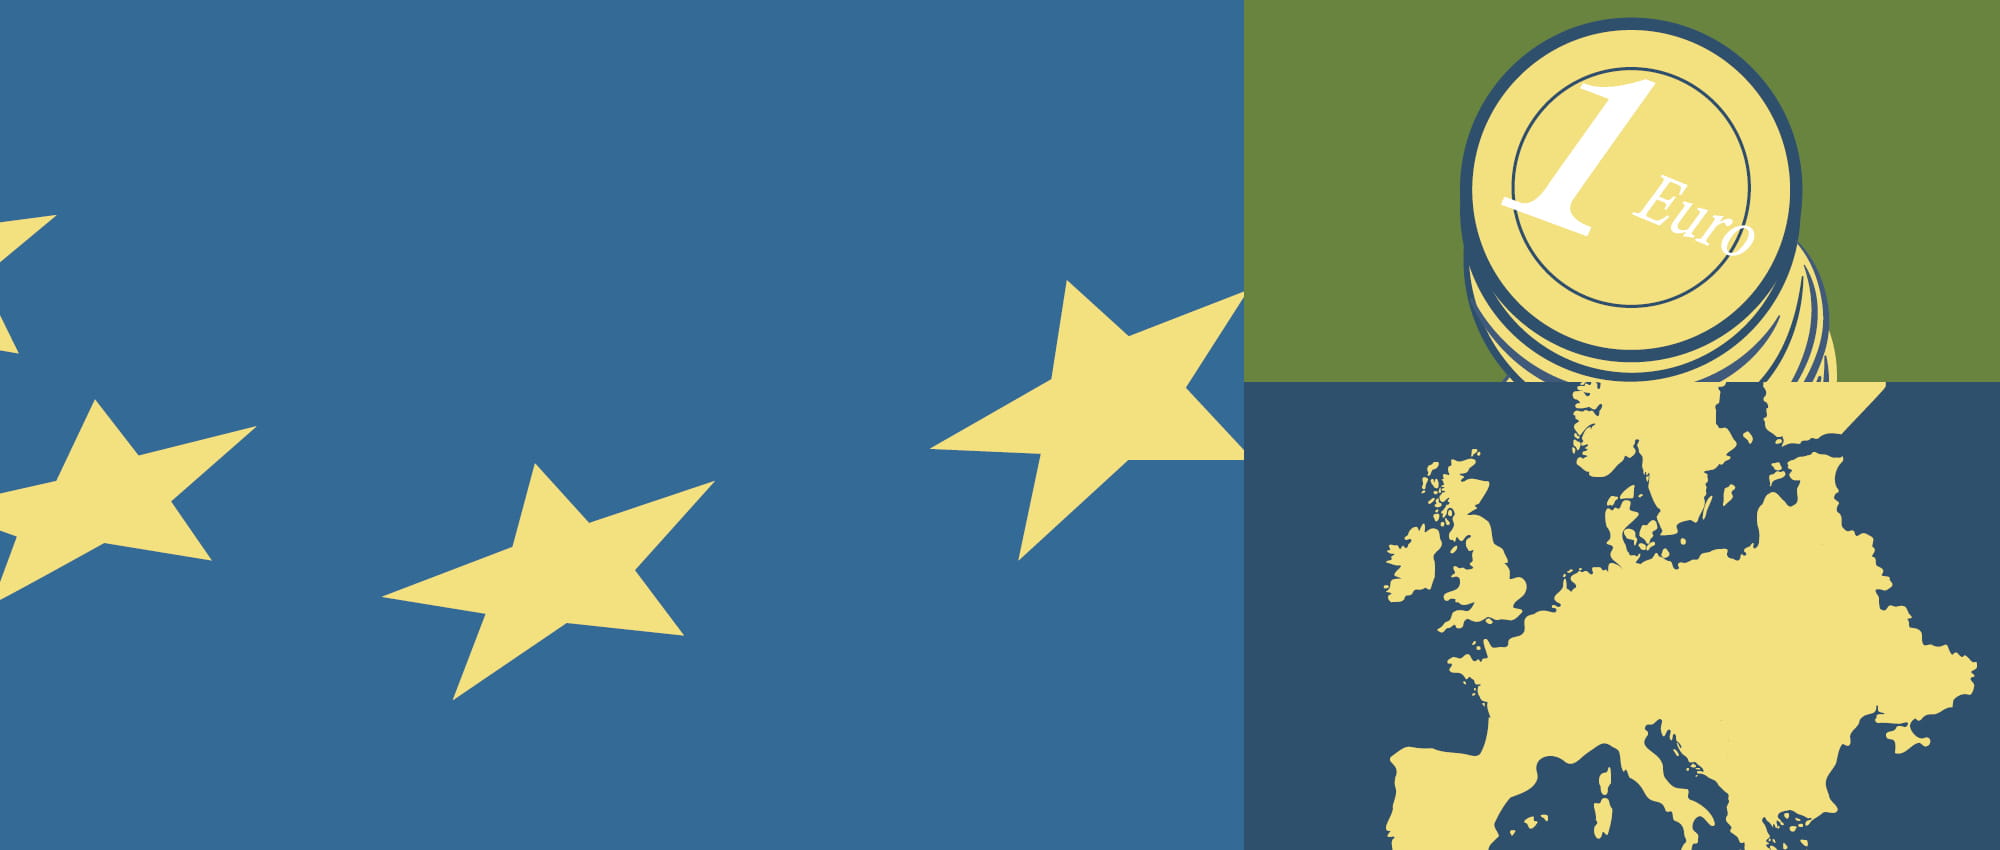 Illustration von den Sternen der europäischen Flagge, Euro-Münzen und einer Karte von Europa.